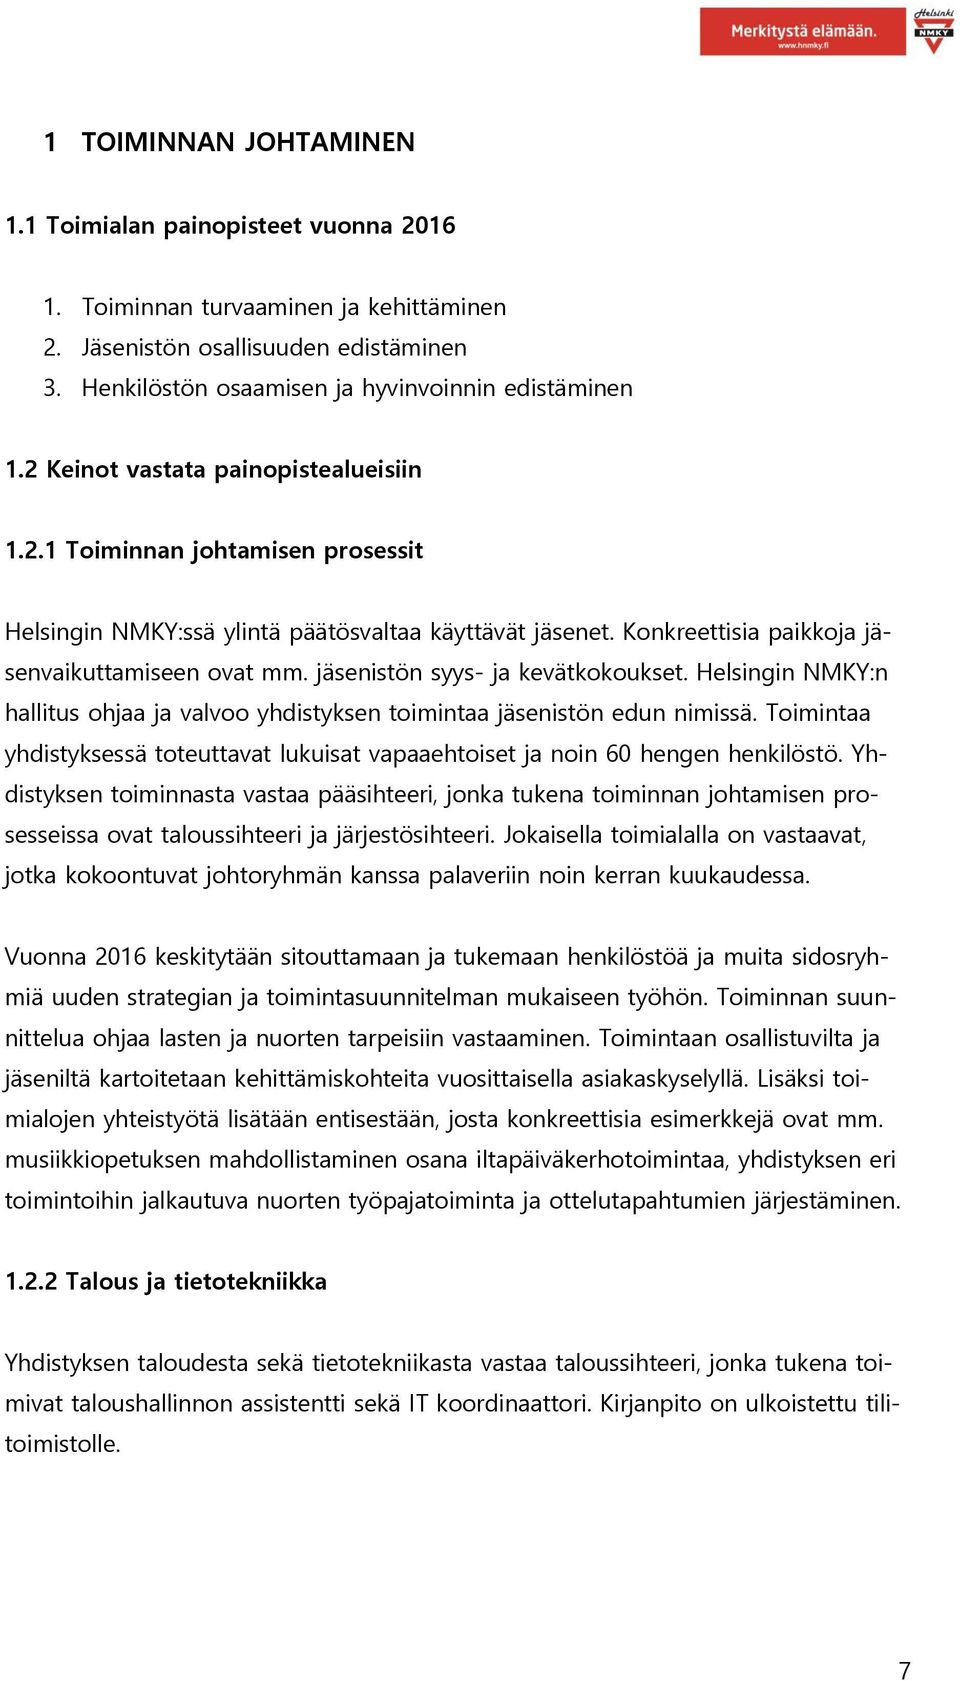 jäsenistön syys- ja kevätkokoukset. Helsingin NMKY:n hallitus ohjaa ja valvoo yhdistyksen toimintaa jäsenistön edun nimissä.